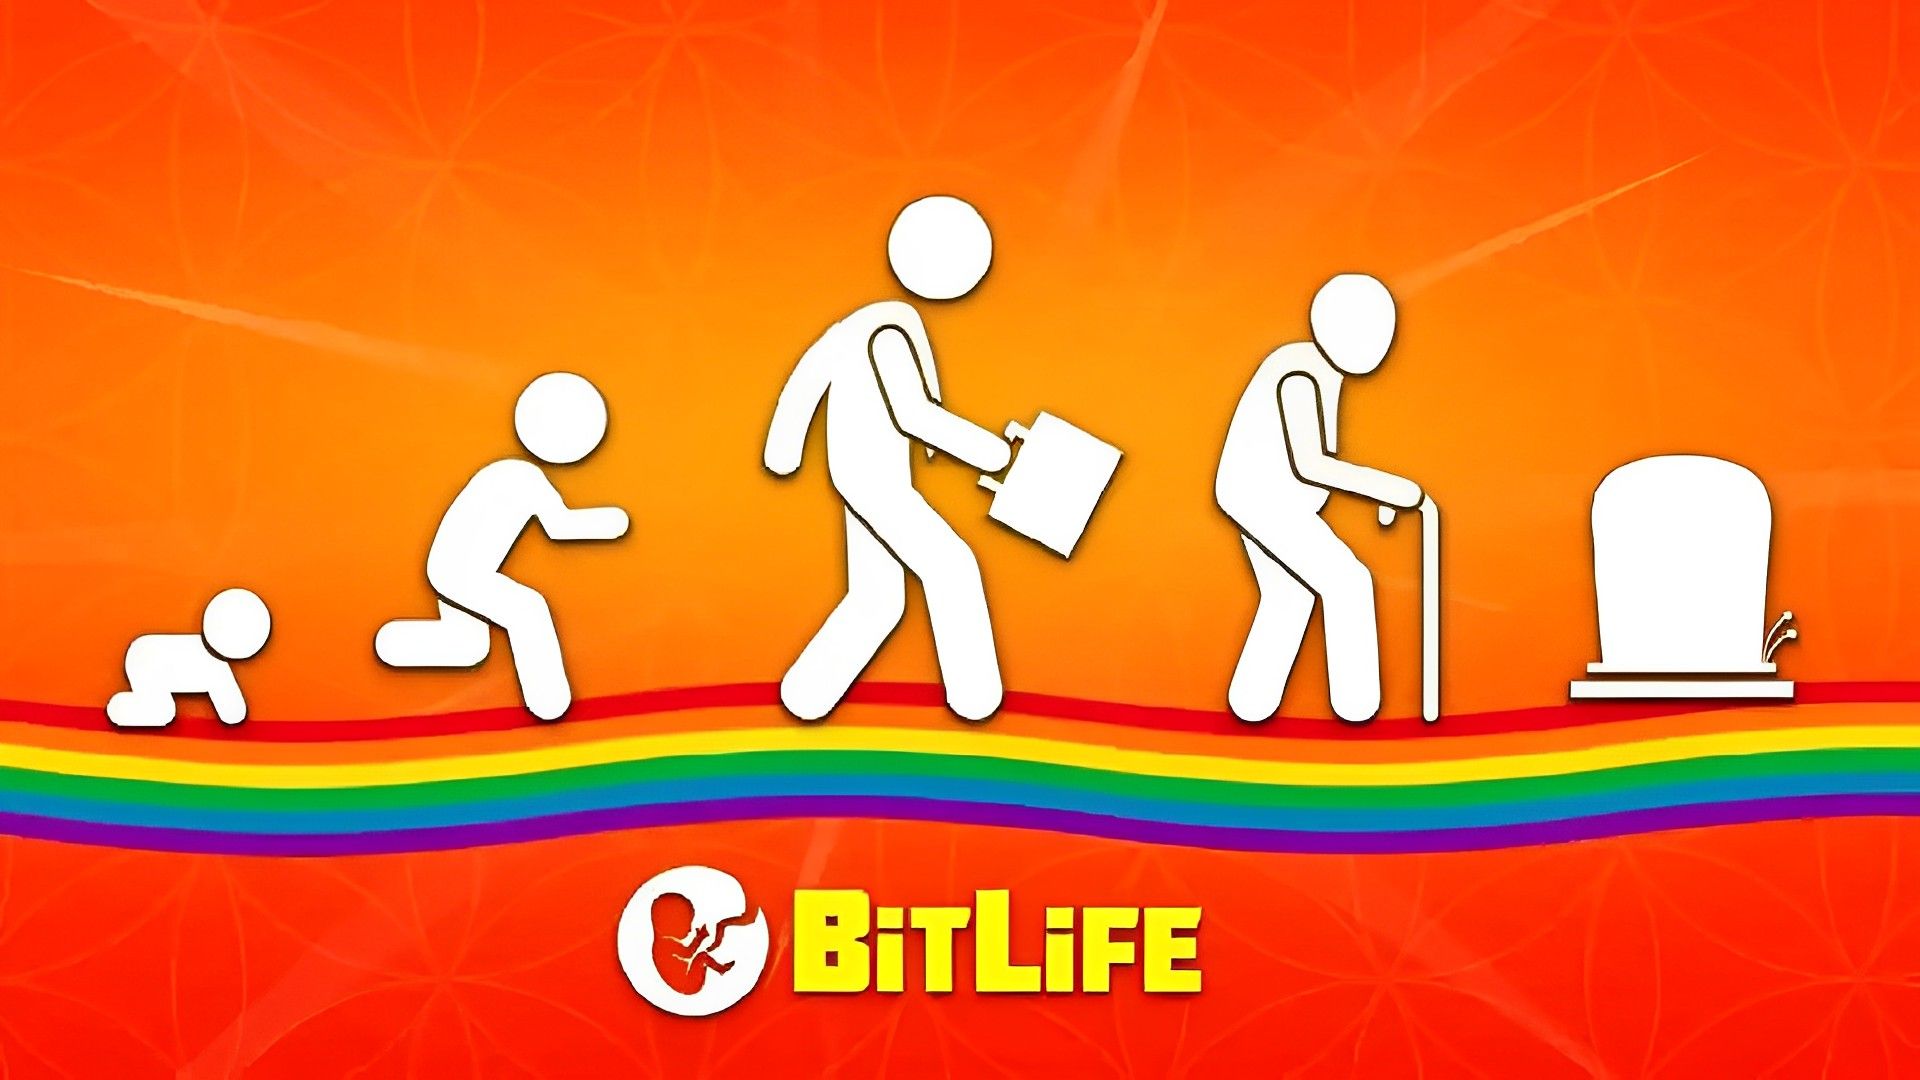 Bitlife life simulator. BITLIFE. BITLIFE - Life Simulator игра. Бит лайф последняя версия. BITLIFE 1.0.